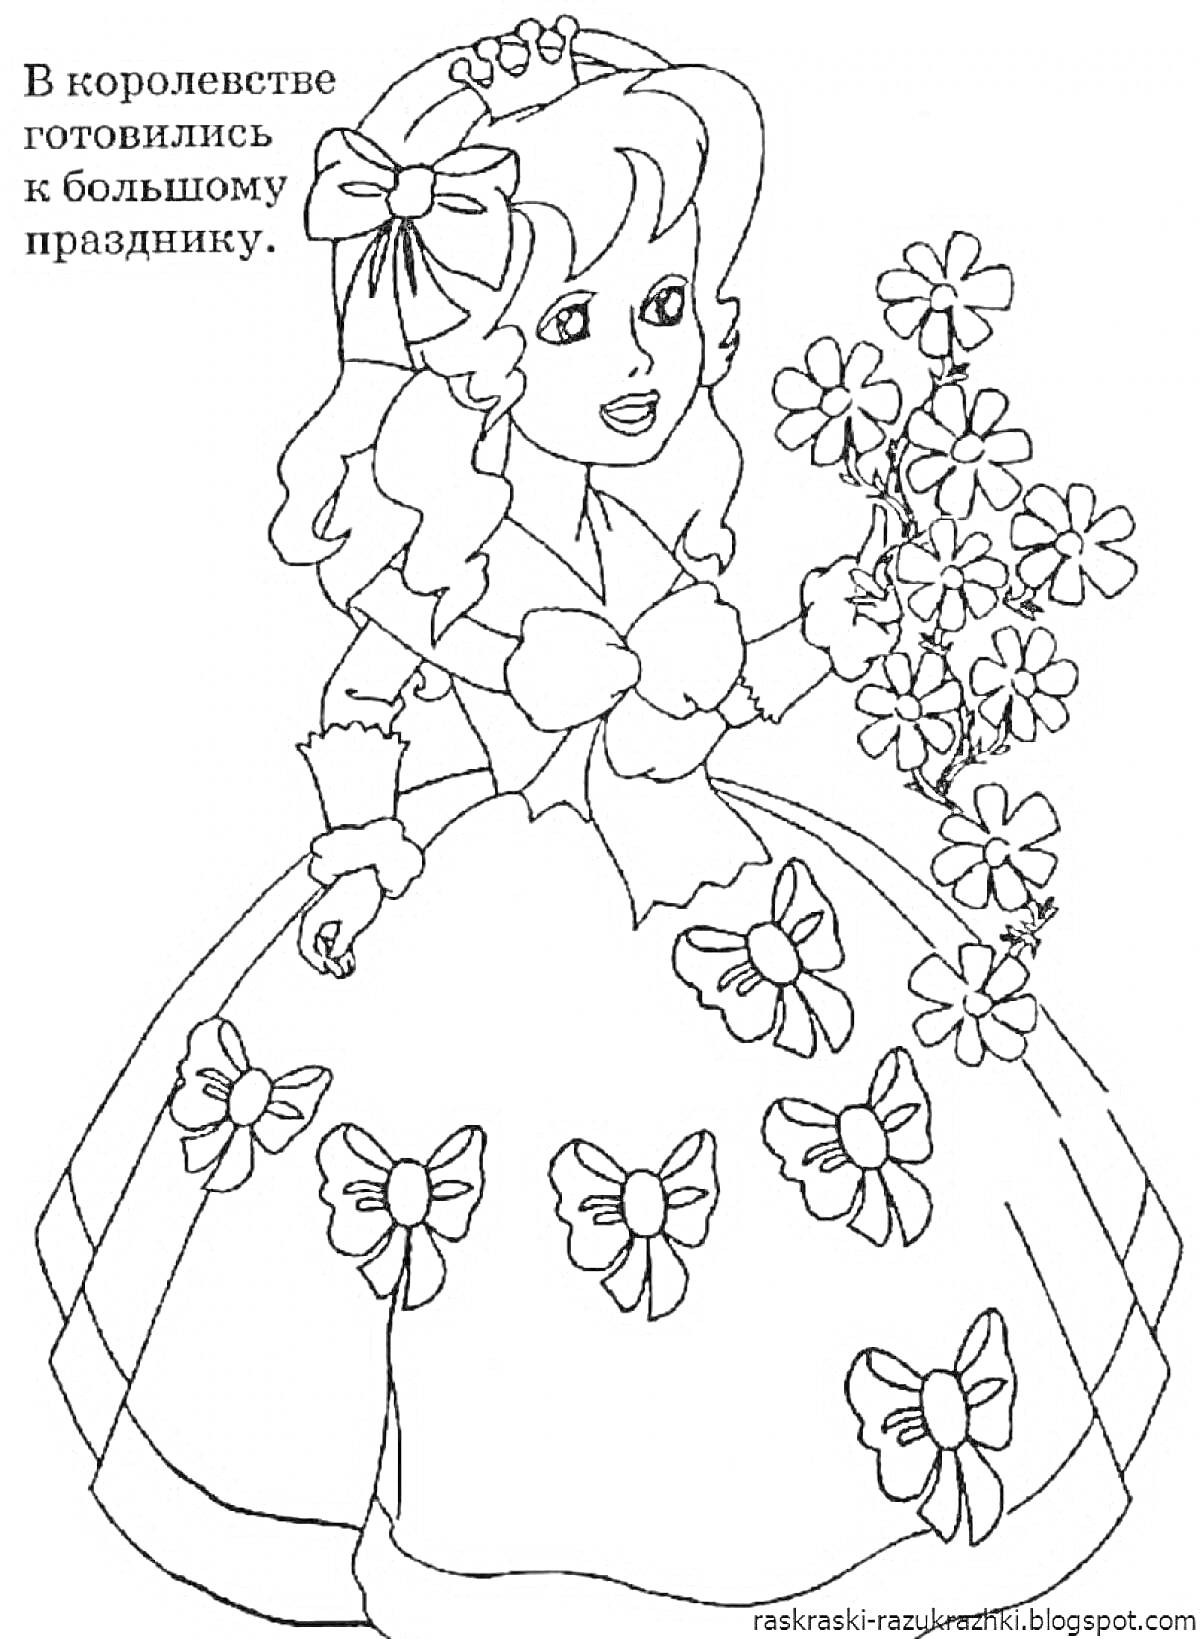 Девочка в платье с бантами и цветами, подготовка к большому празднику в королевстве